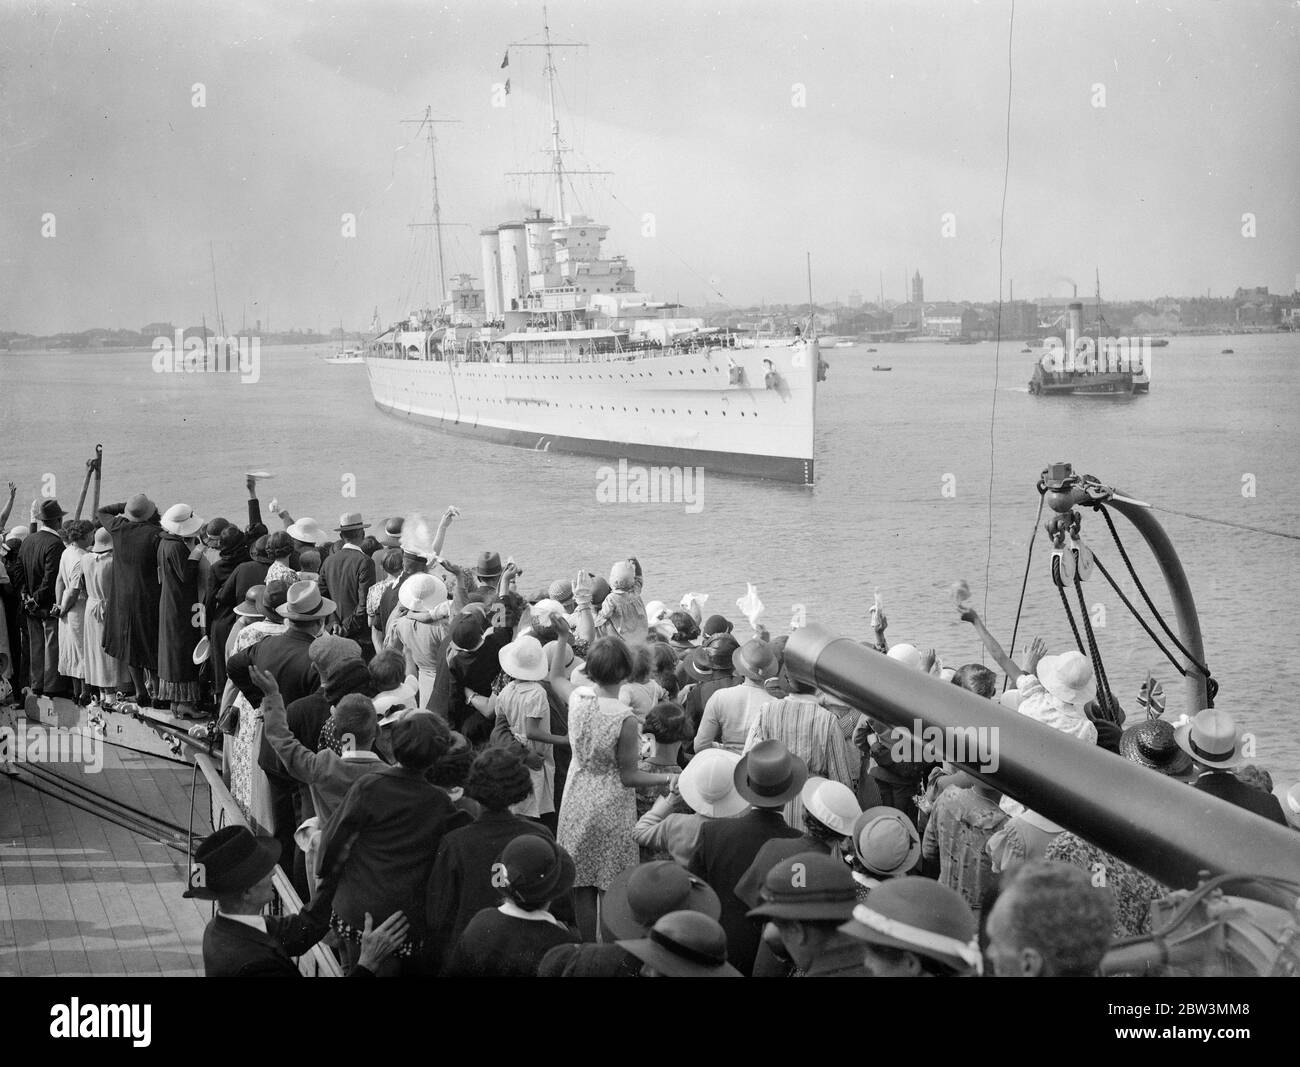 La nave da guerra porta tesori d'arte cinesi a Portsmouth - ricchezza favolosa nelle scatole di imballaggio . Il Suffolk attracca a Portsmouth . Si ancorò accanto al Hood , da cui venne accolta dai parenti dell' equipaggio di ritorno . 25 luglio 1935 Foto Stock